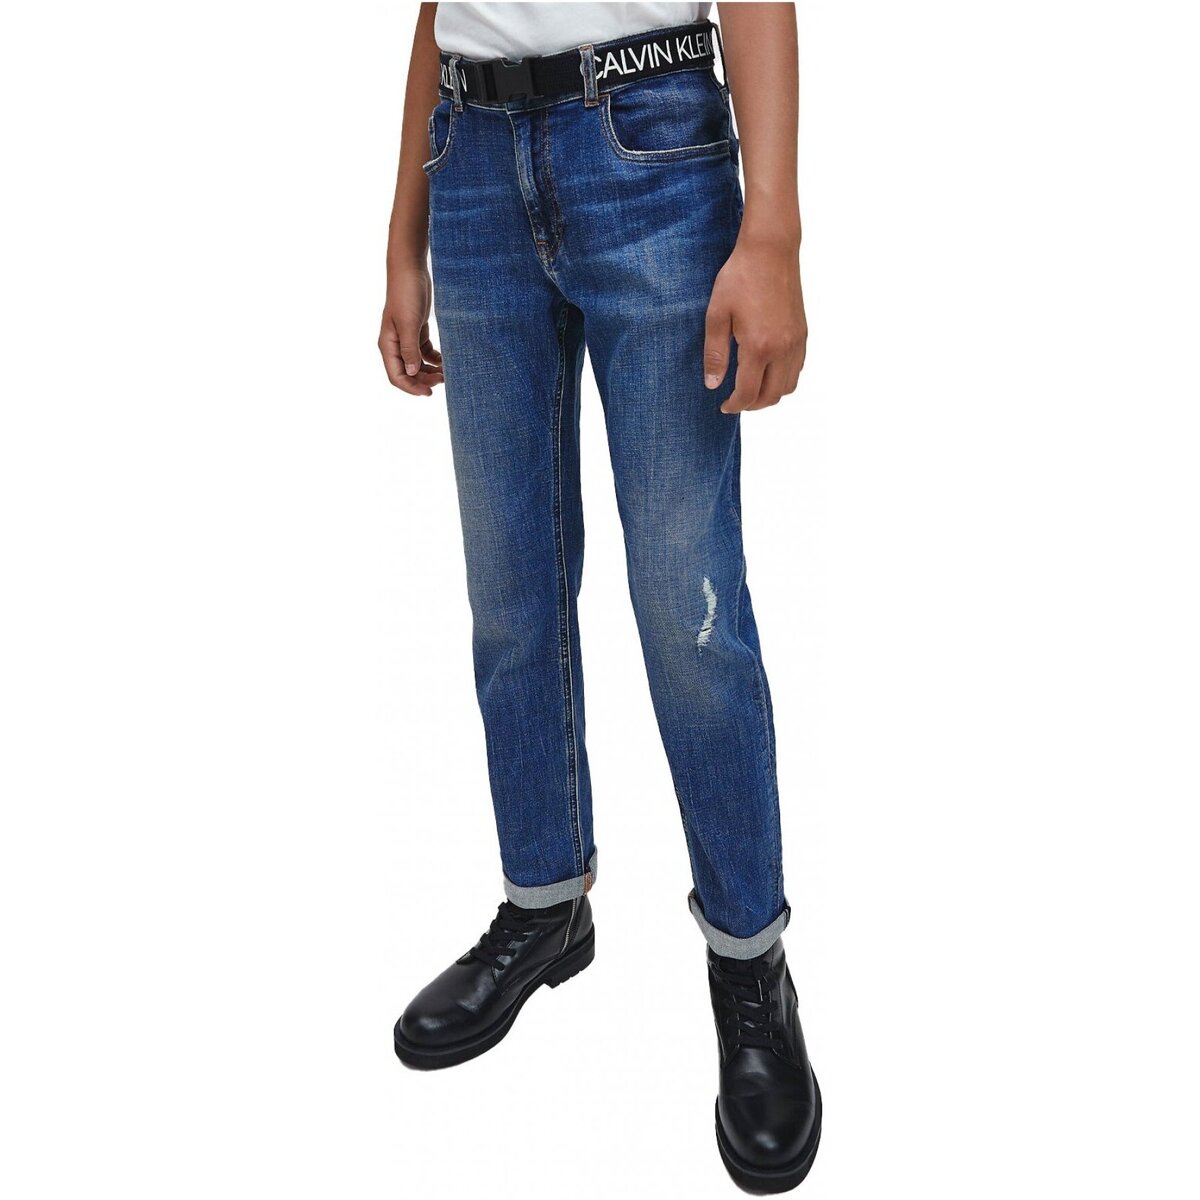 Παντελόνια Calvin Klein Jeans IB0IB00580